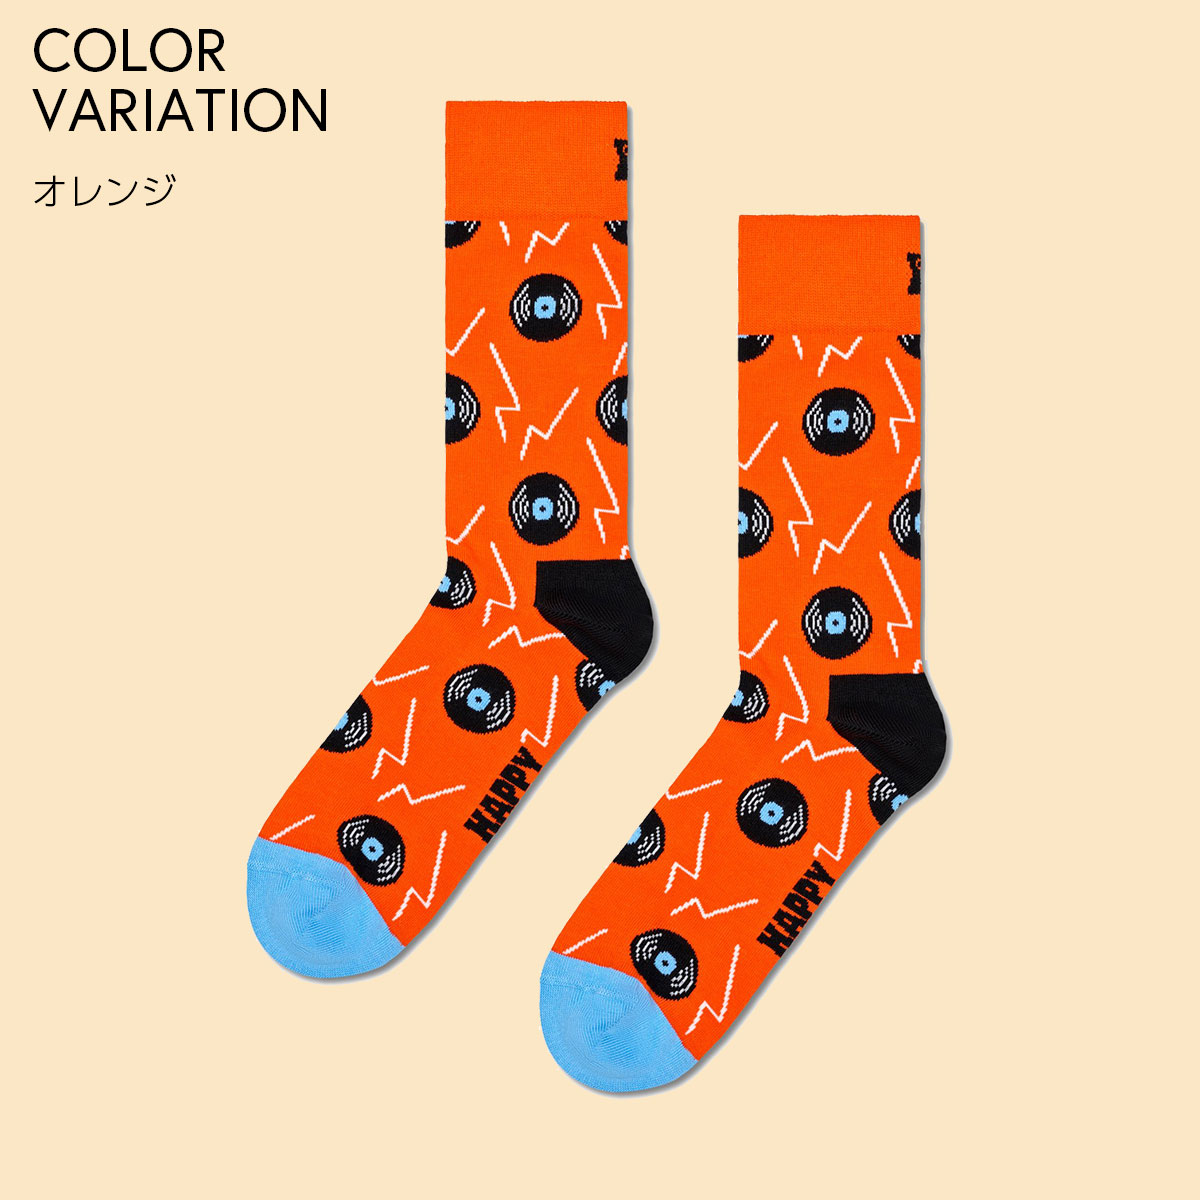 【24SS】Happy Socks ハッピーソックス Vinyl ( ビニール ) レコード オレンジ クルー丈 ソックス ユニセックス メンズ ＆ レディス 10240069